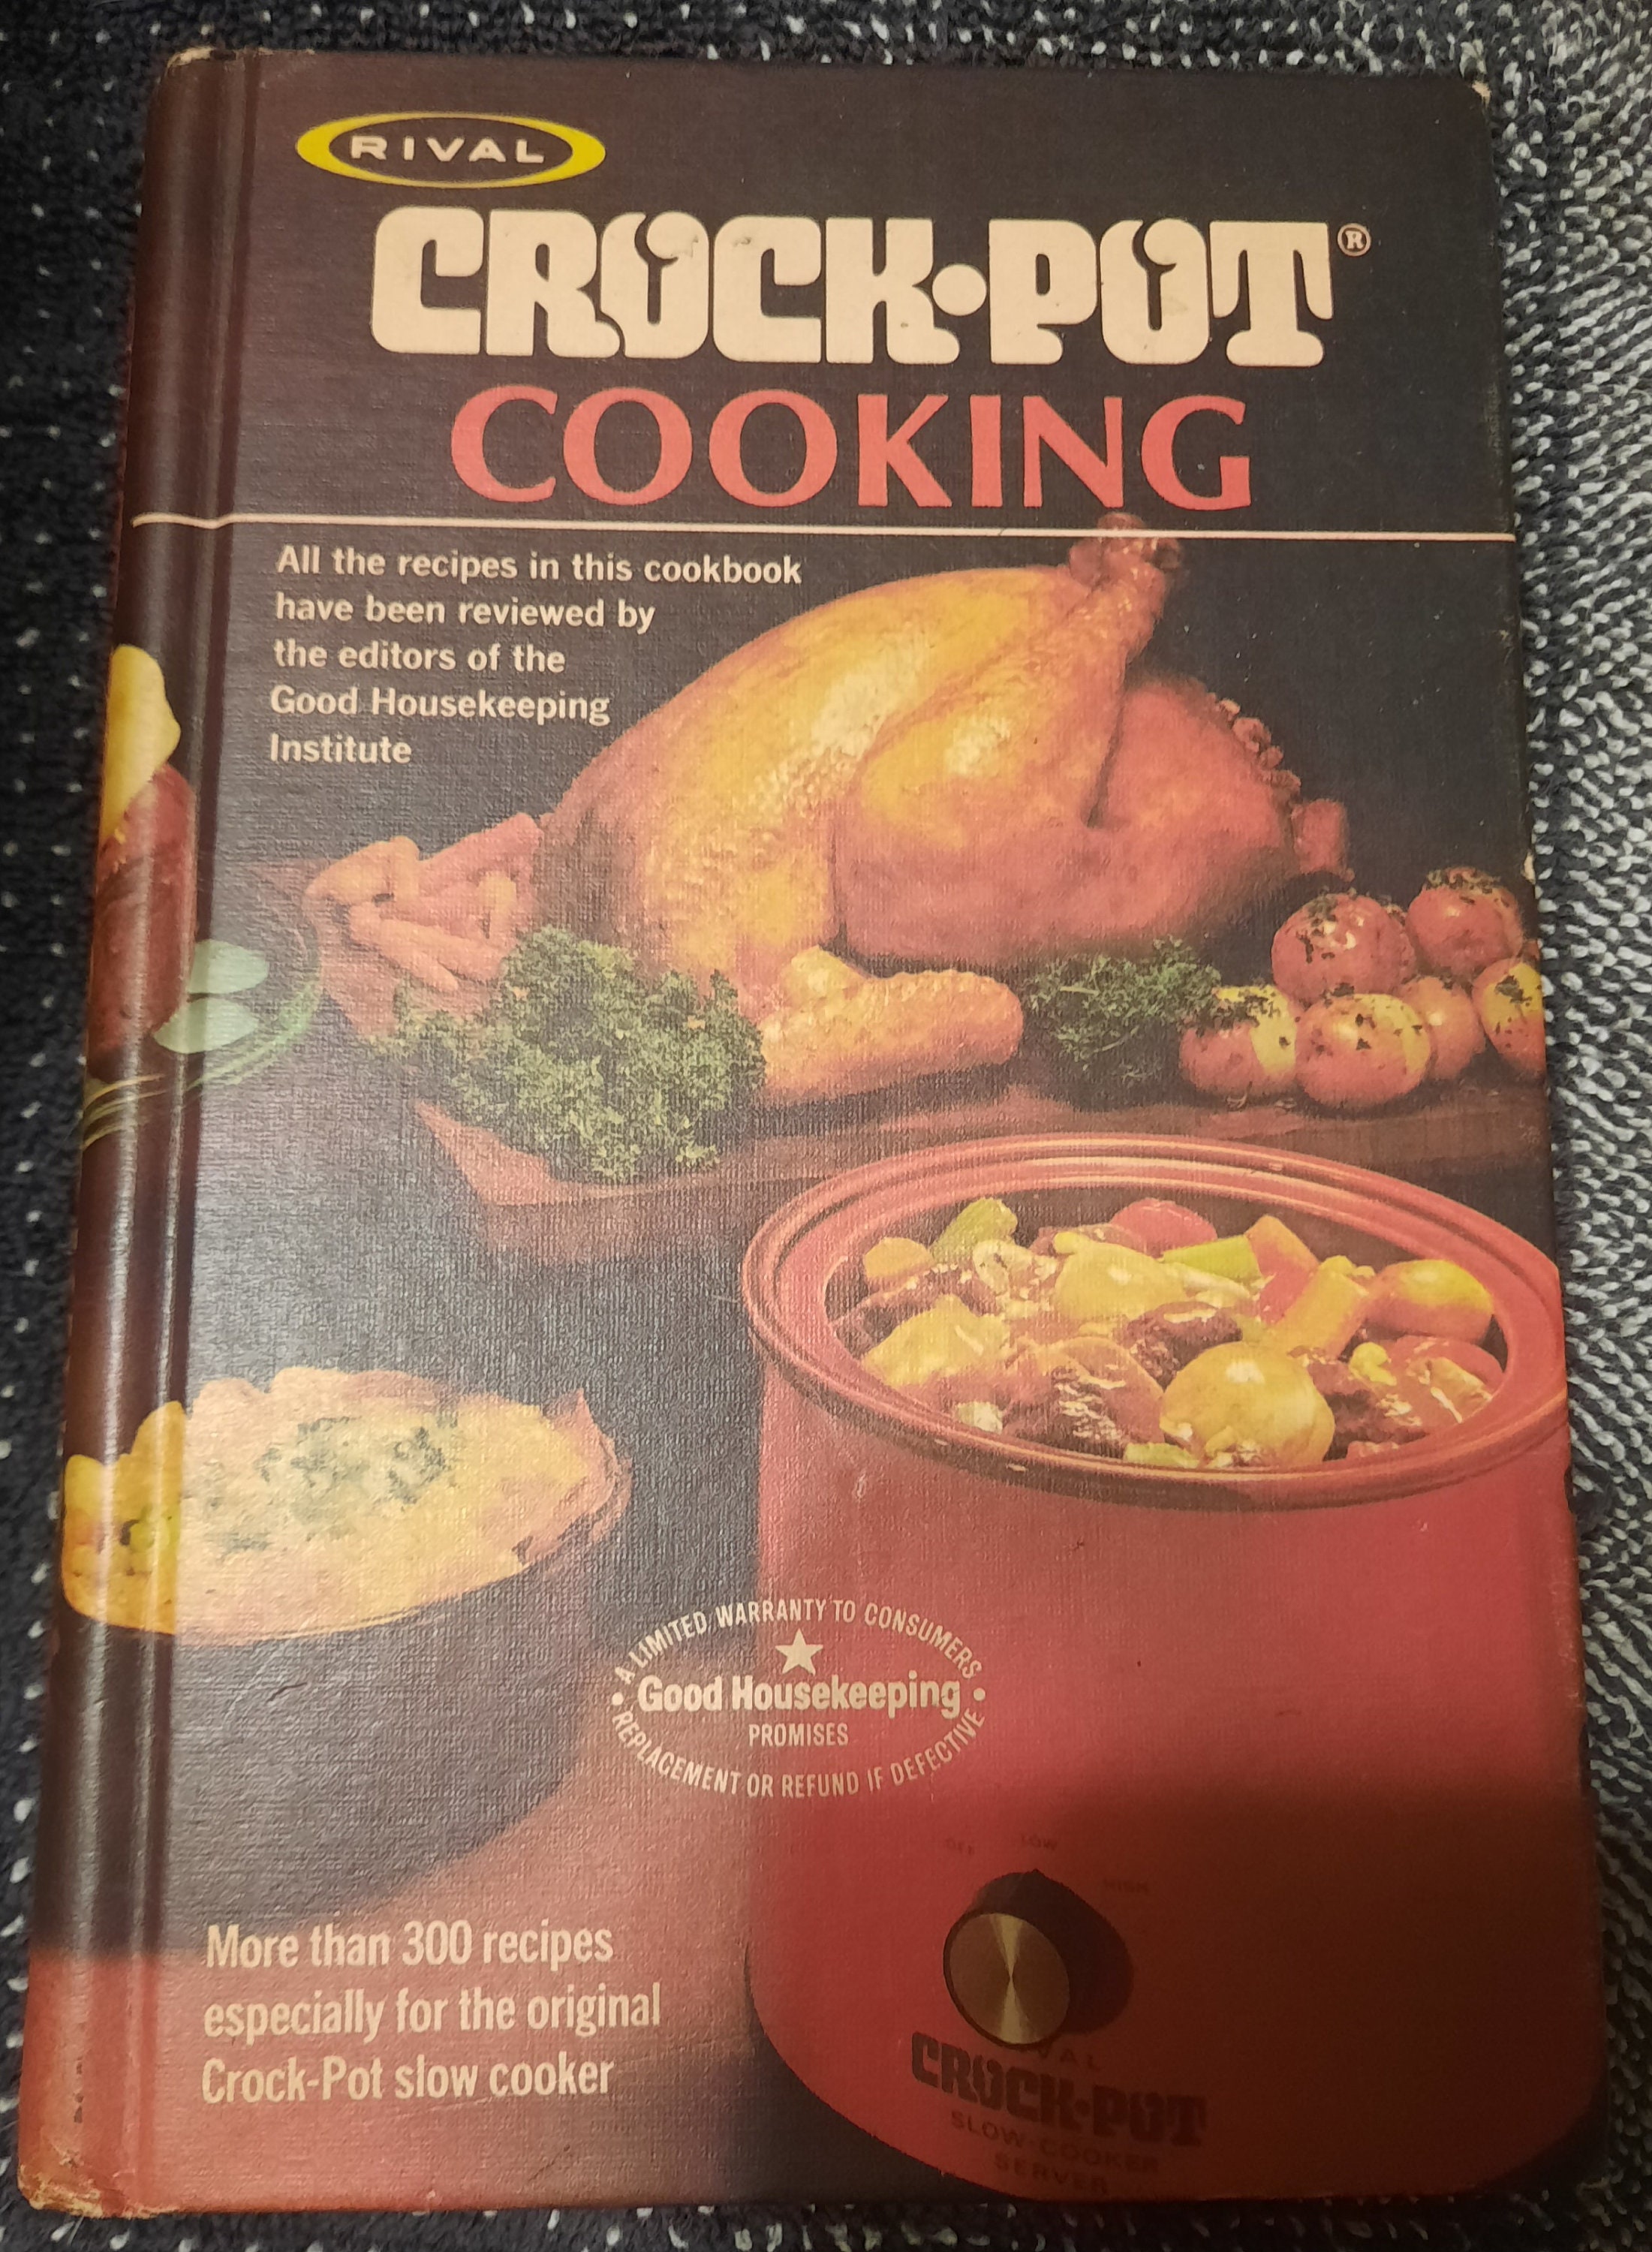 Publications International, Ltd. Crock-Pot Slow Cooker Recipes Cookbook